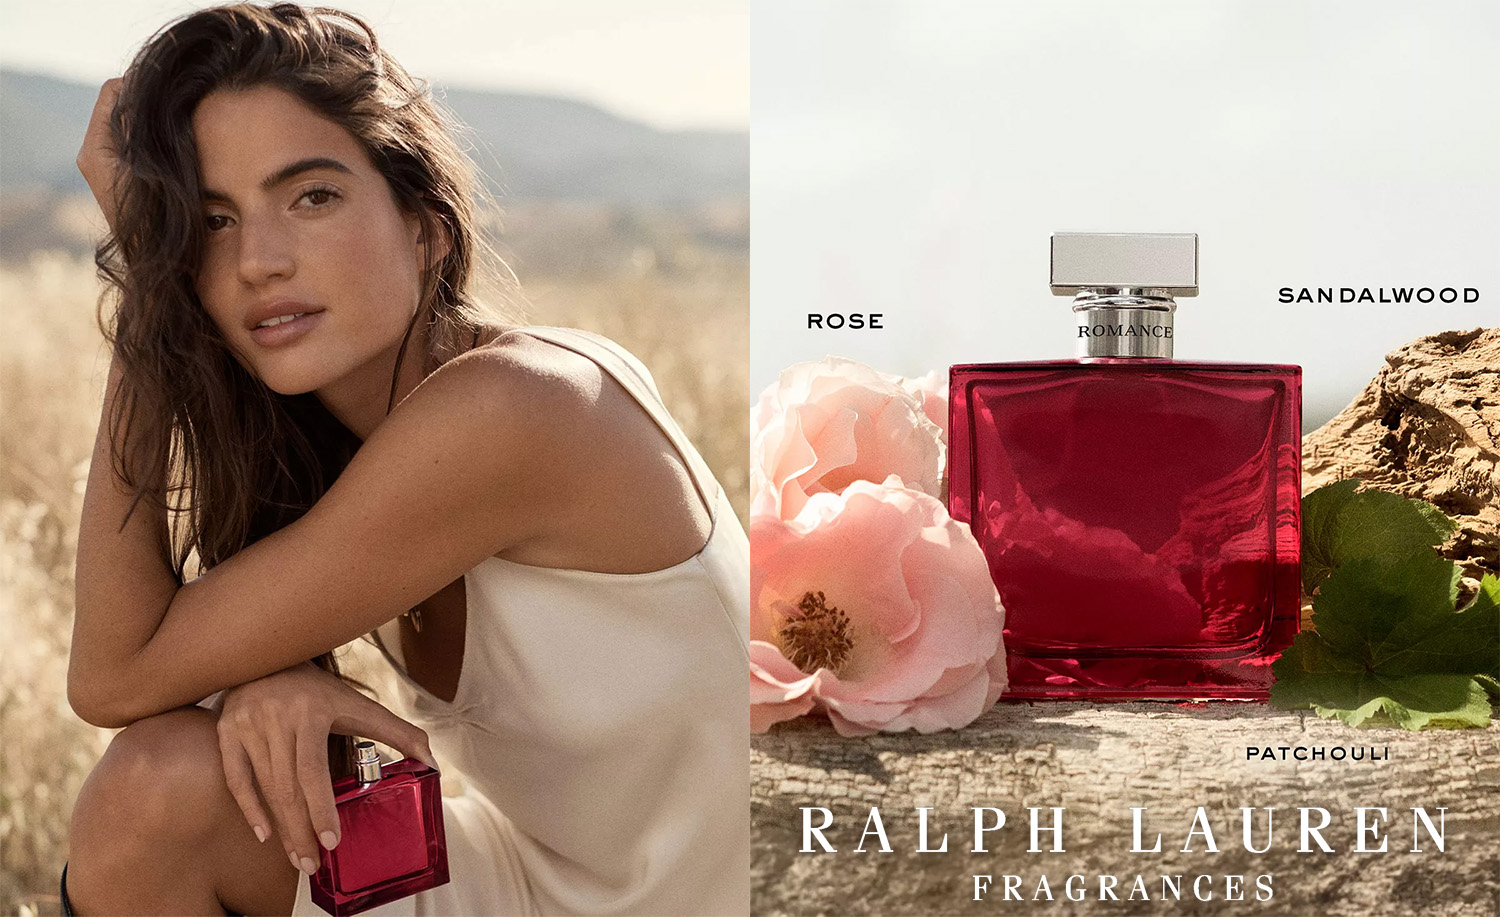  Ralph Lauren FRAGRANCES Romance - Eau de Parfum